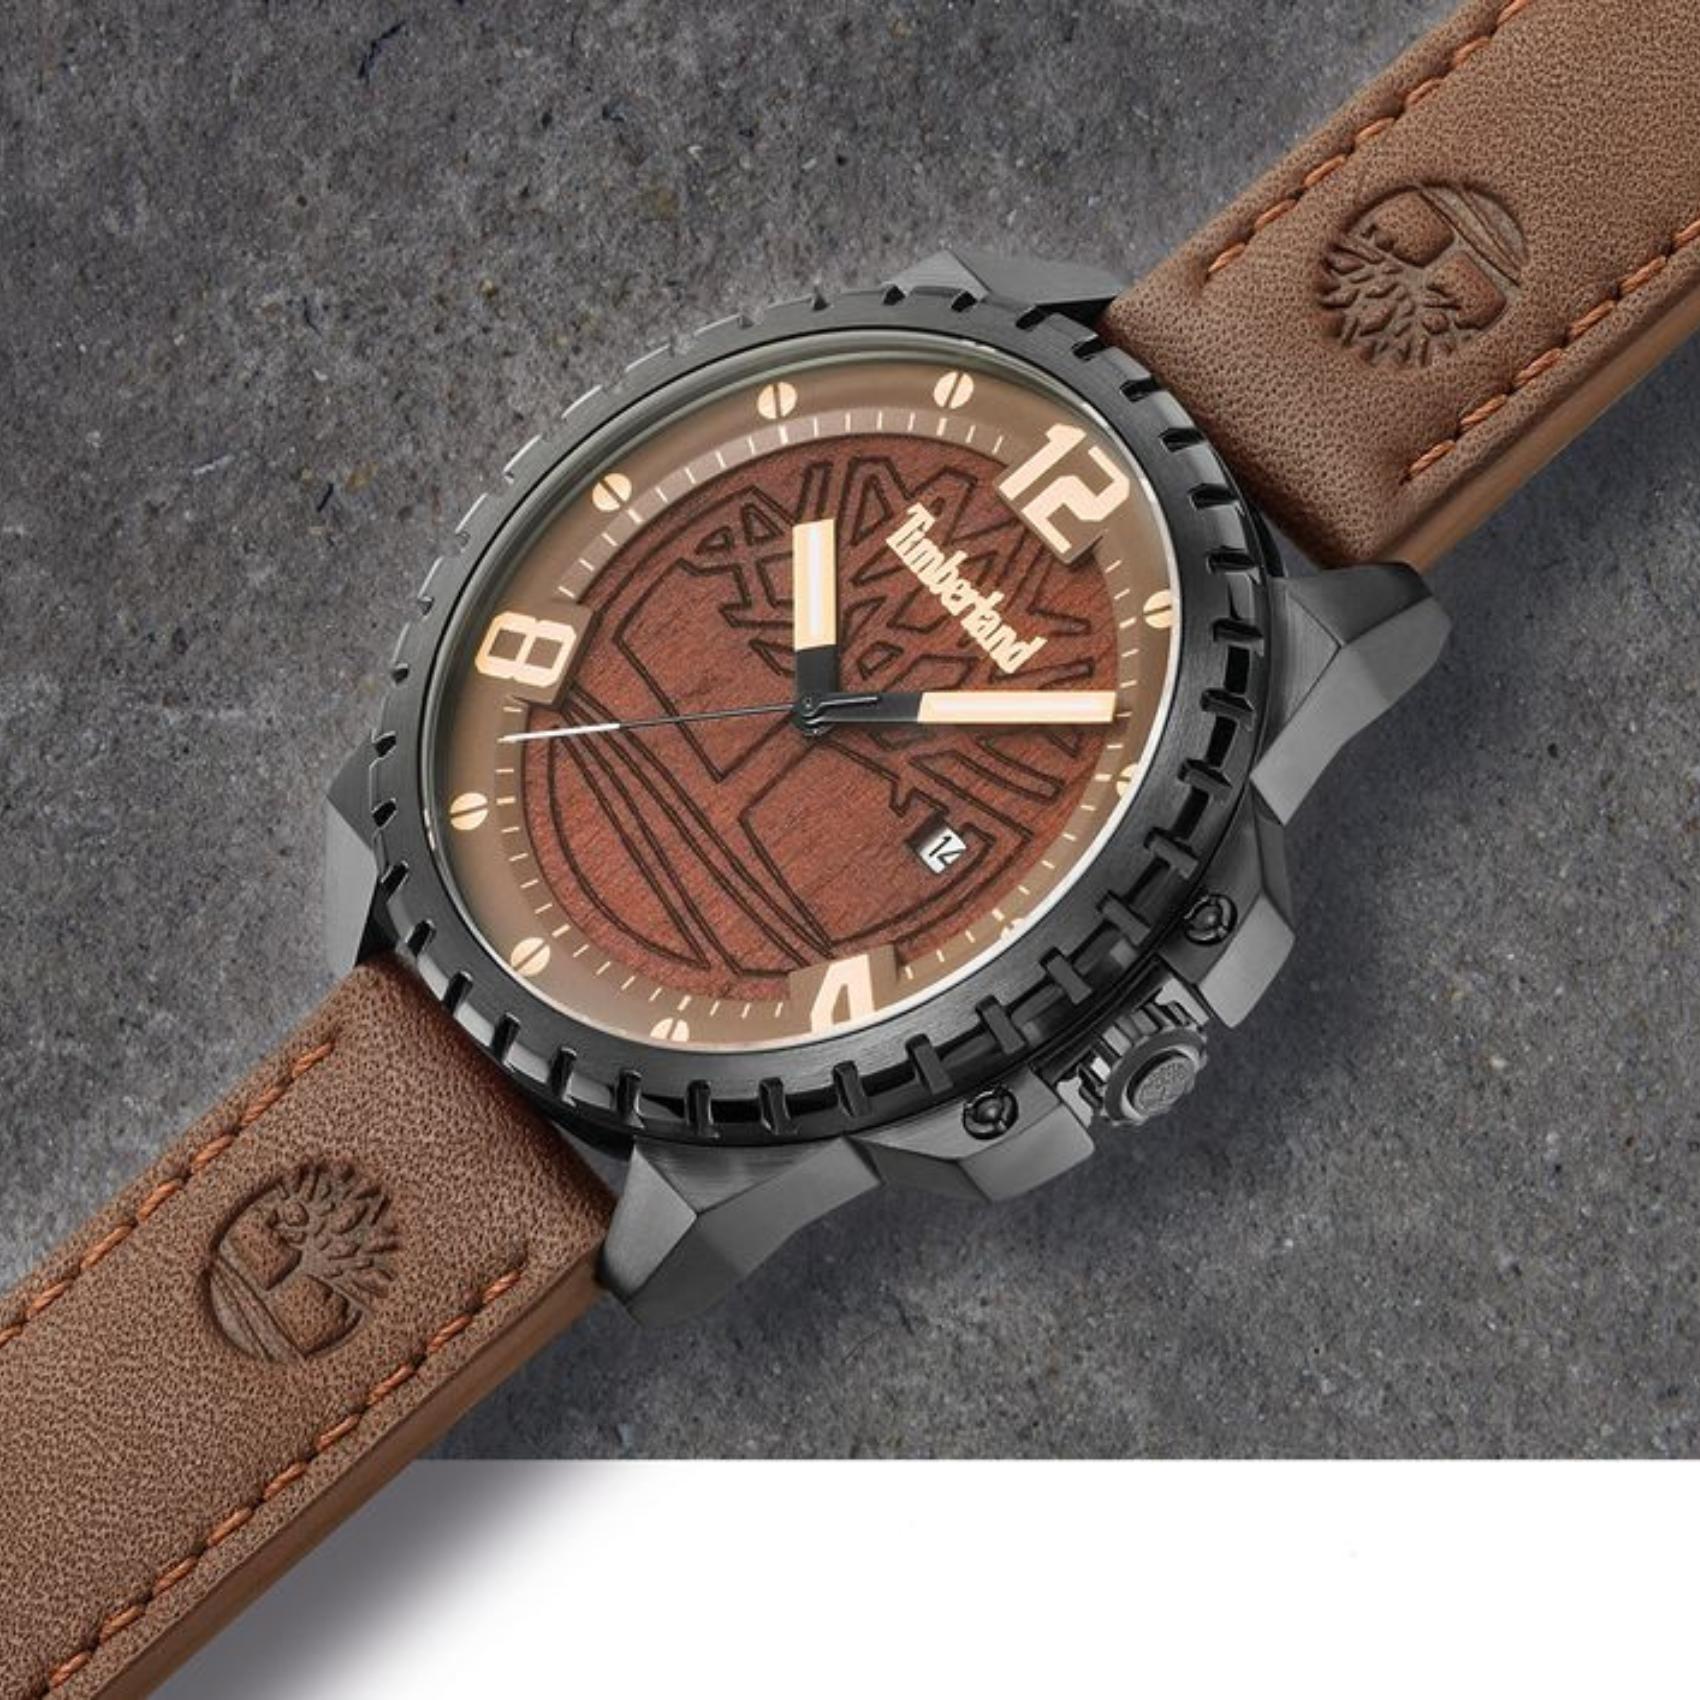 Ανδρικό ρολόι Timberland Eastford TBL15513JSB/12 με καφέ δερμάτινο λουράκι και καφέ καντράν διαμέτρου 45mm με ημερομηνία.